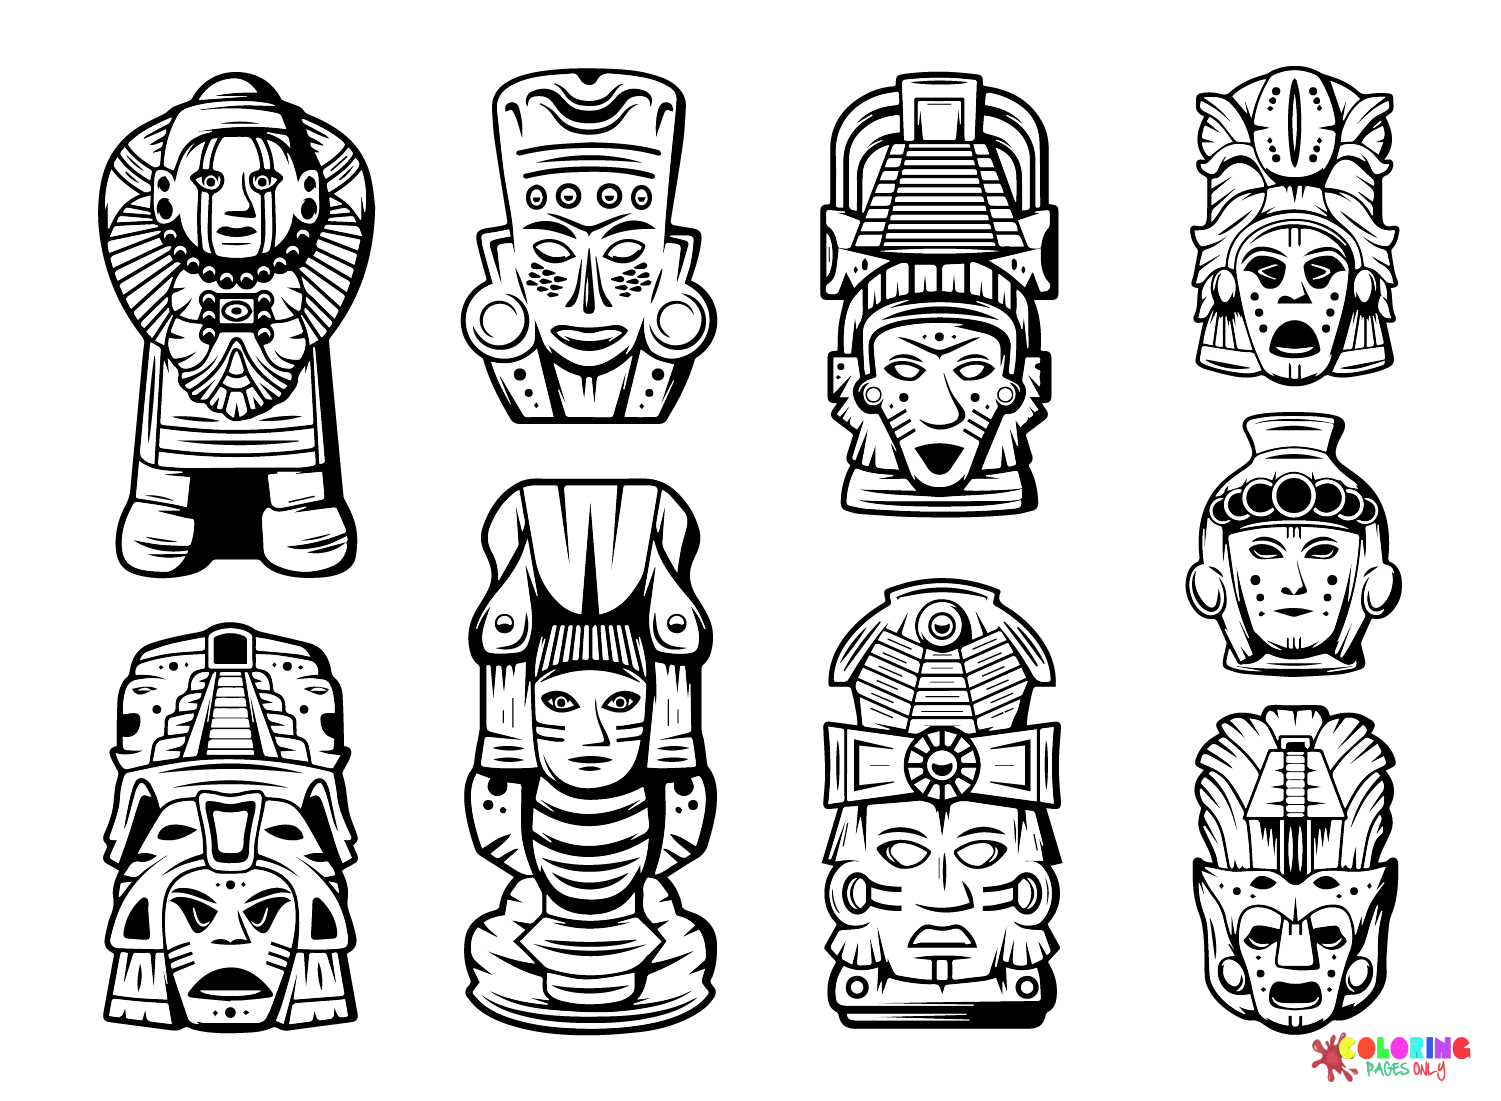 Pagina da colorare dell'antica civiltà Maya